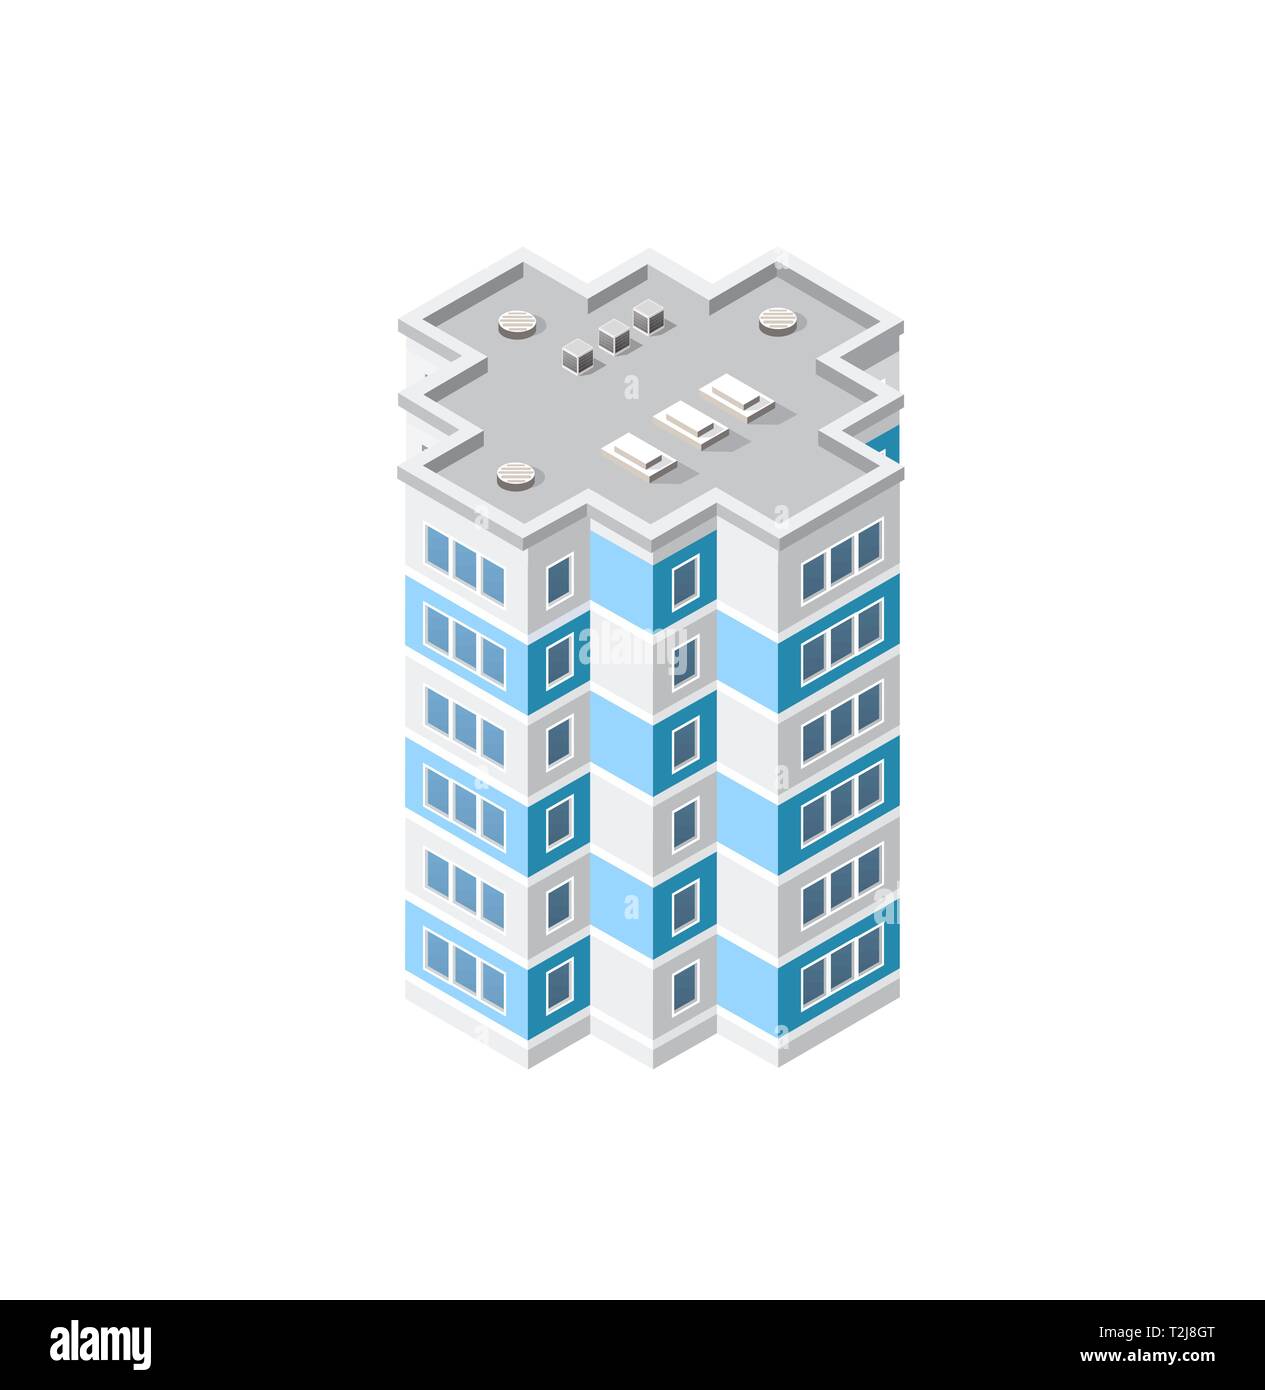 Die Intelligenz Gebäude home Architektur ist eine Idee der Technologie Business Equipment Flat Style urban isometrische Darstellung Stock Vektor